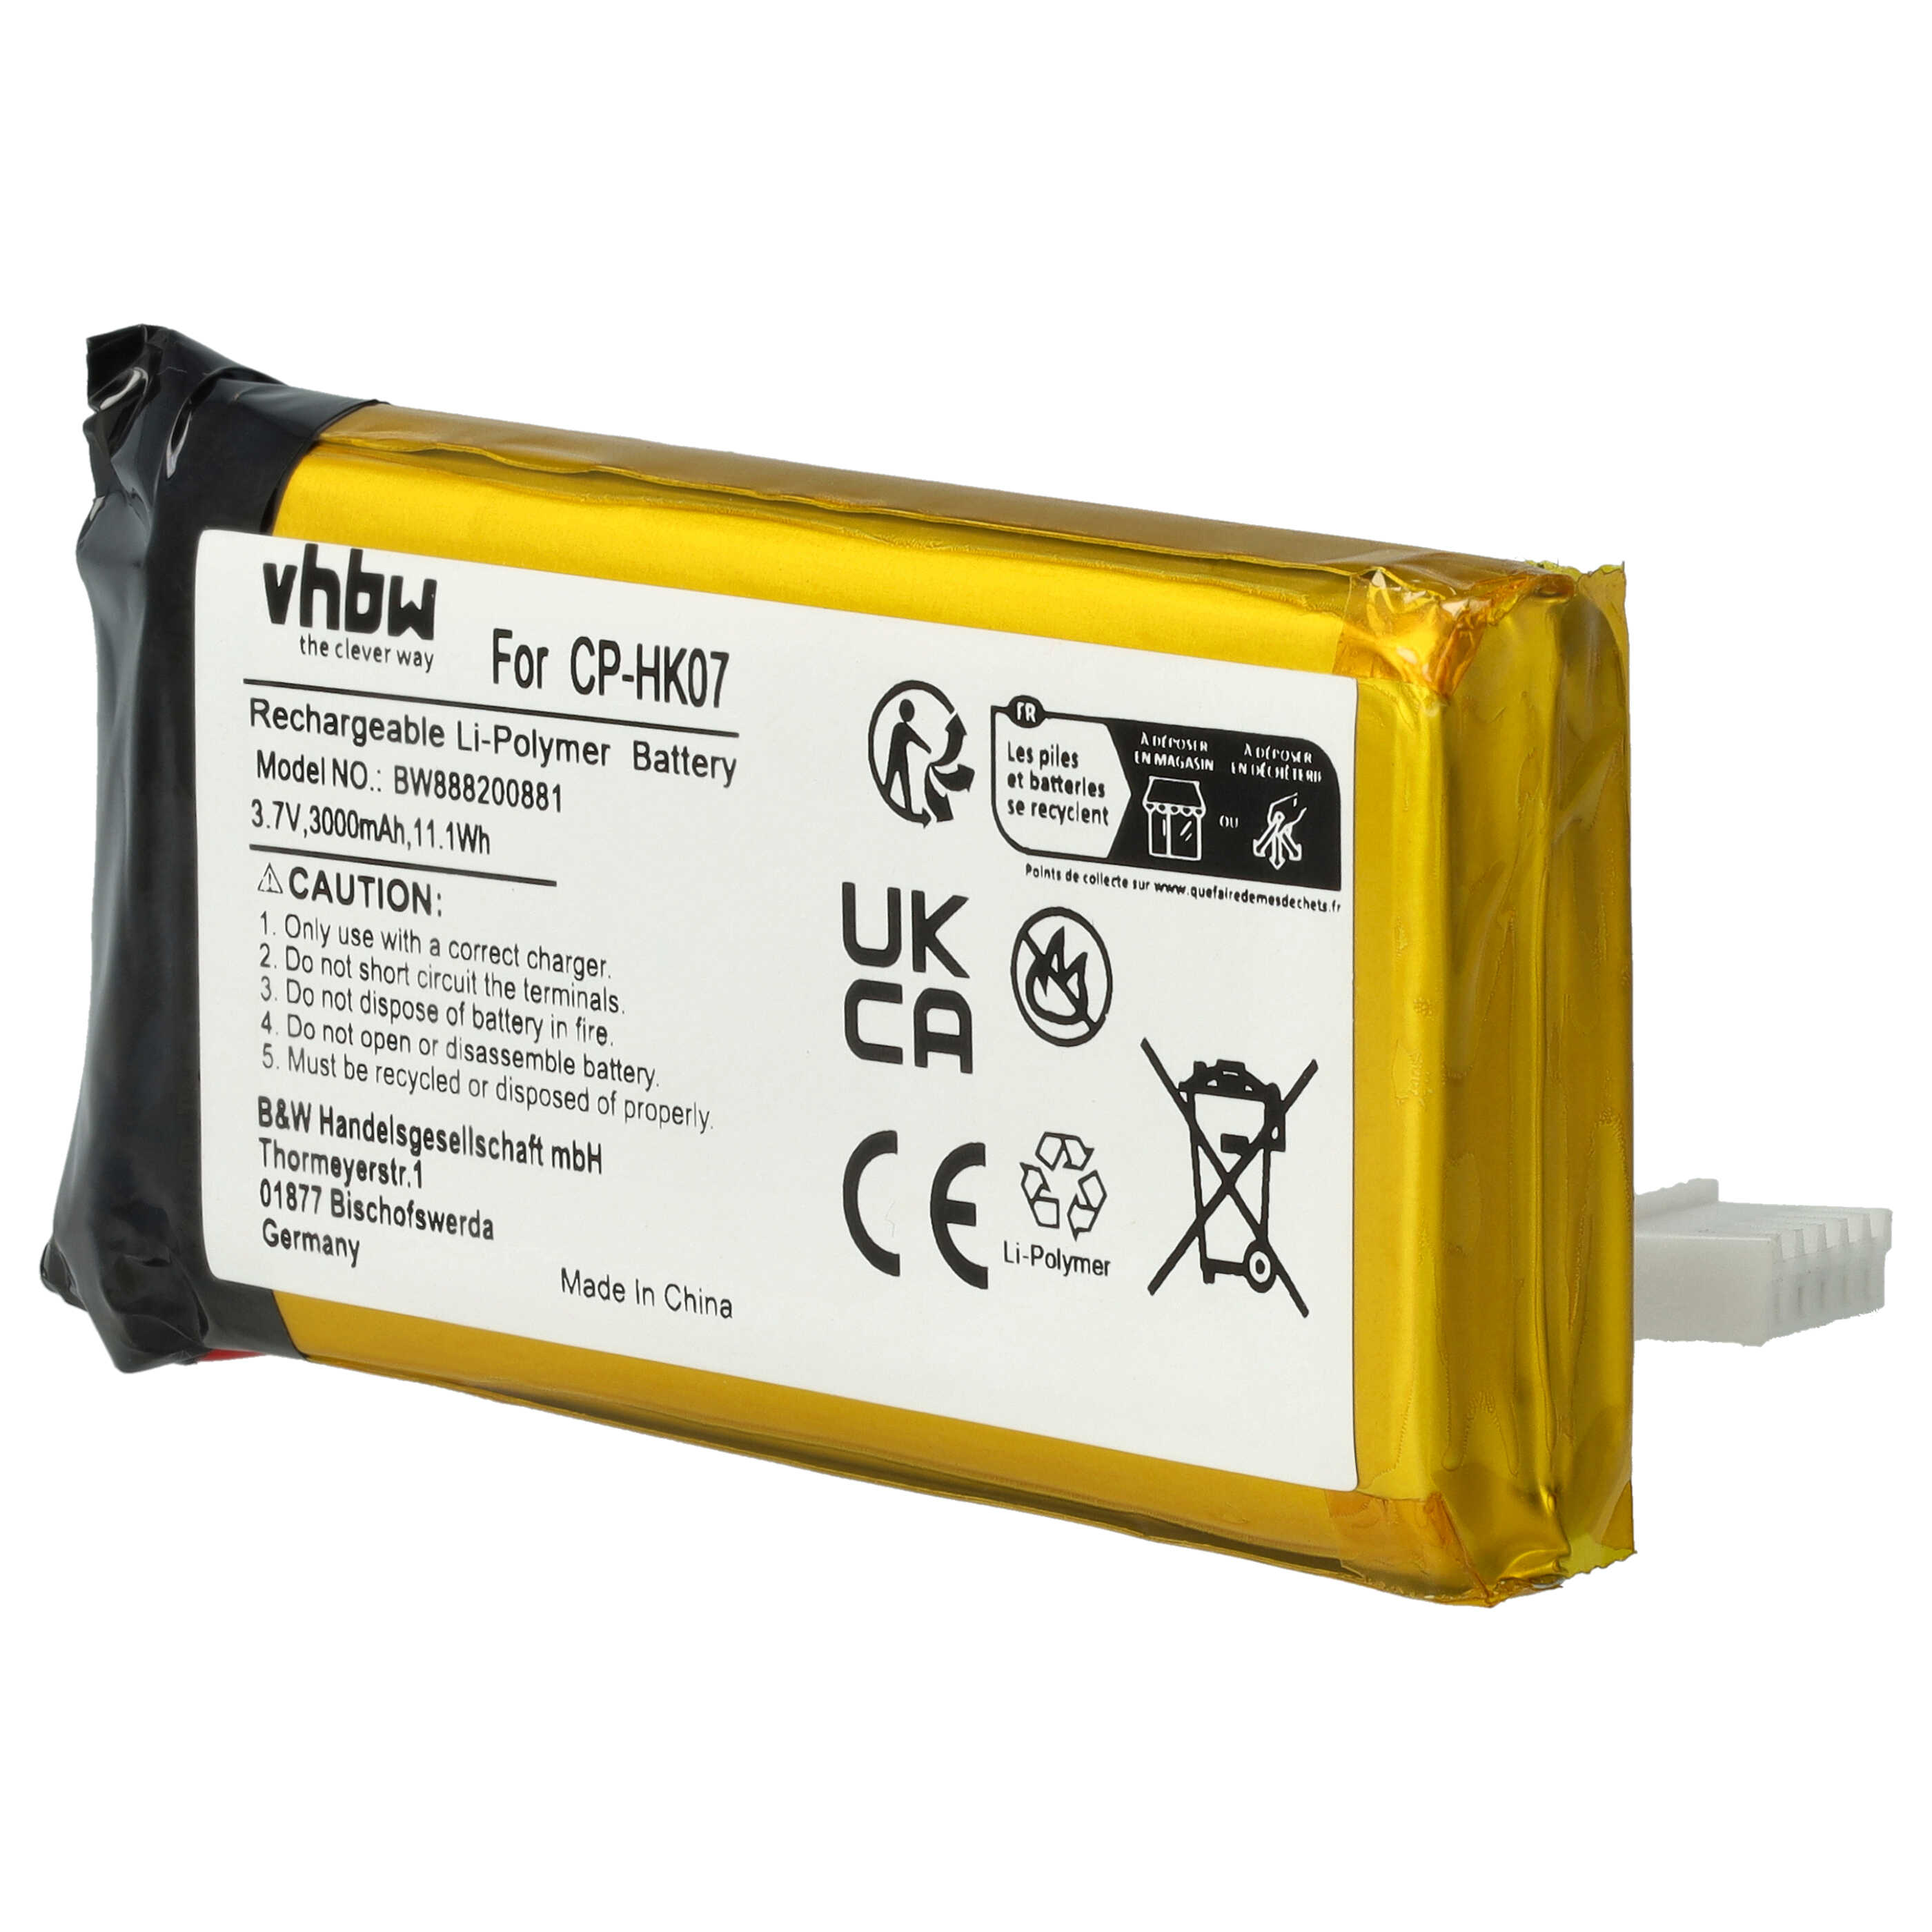 Batterie remplace Harman / Kardon P954374, CP-HK07 pour enceinte Harman / Kardon - 3000mAh 3,7V Li-polymère